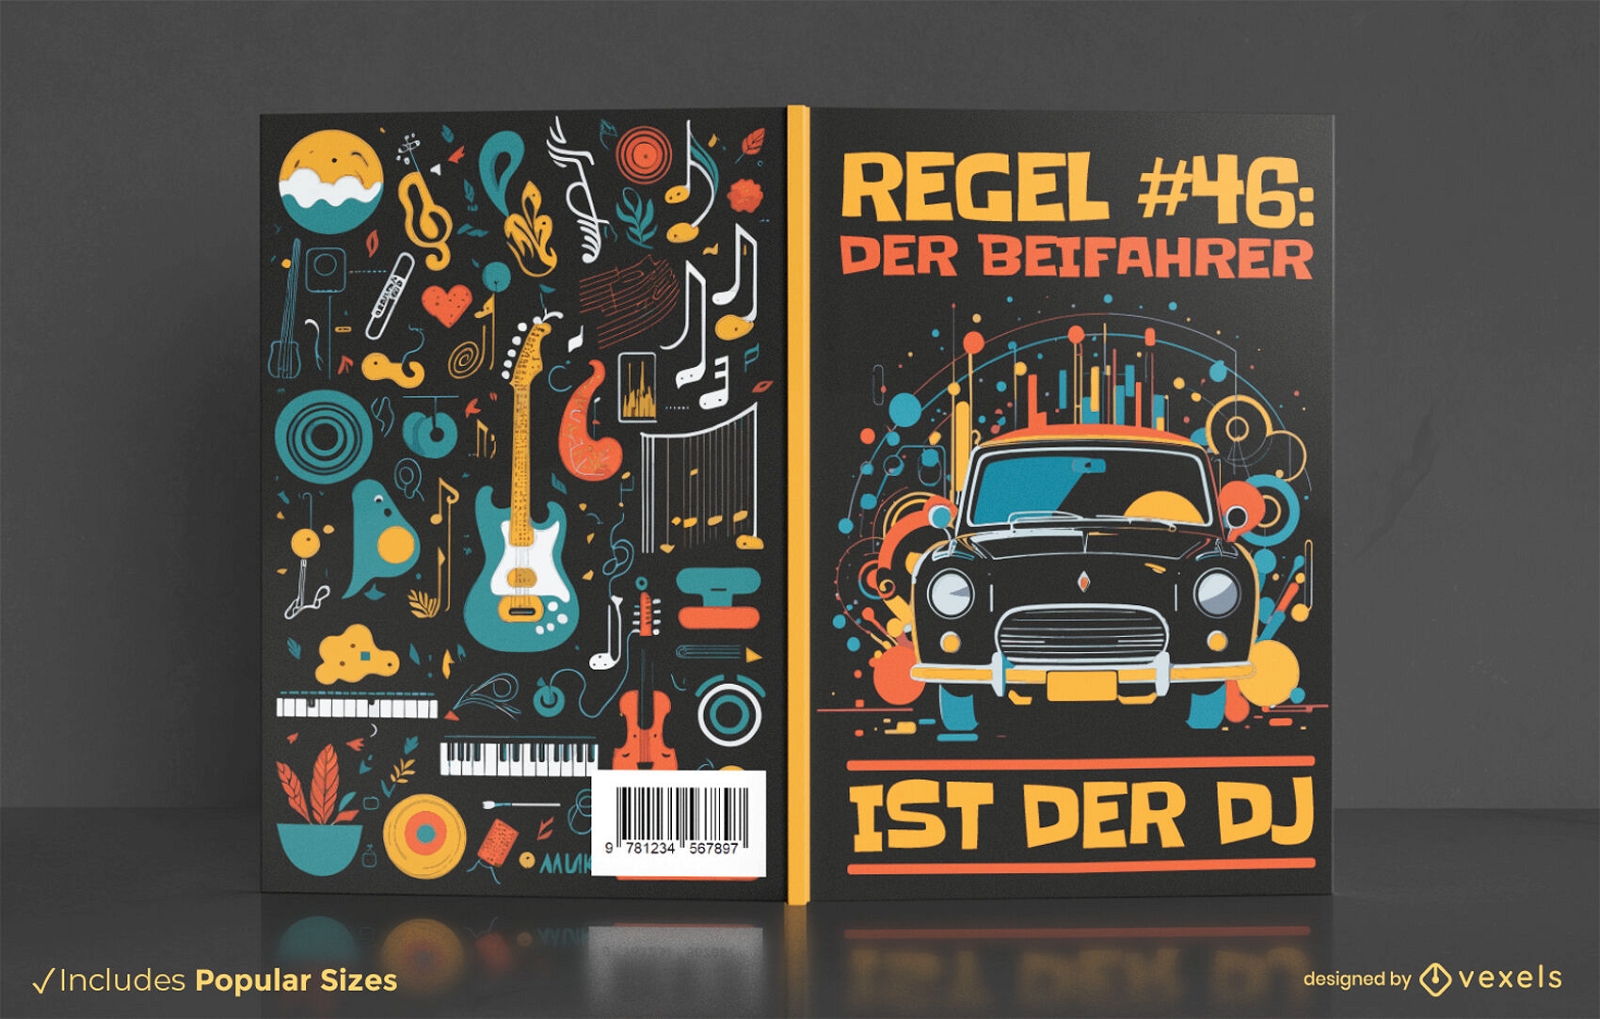 DJ rule book cover design